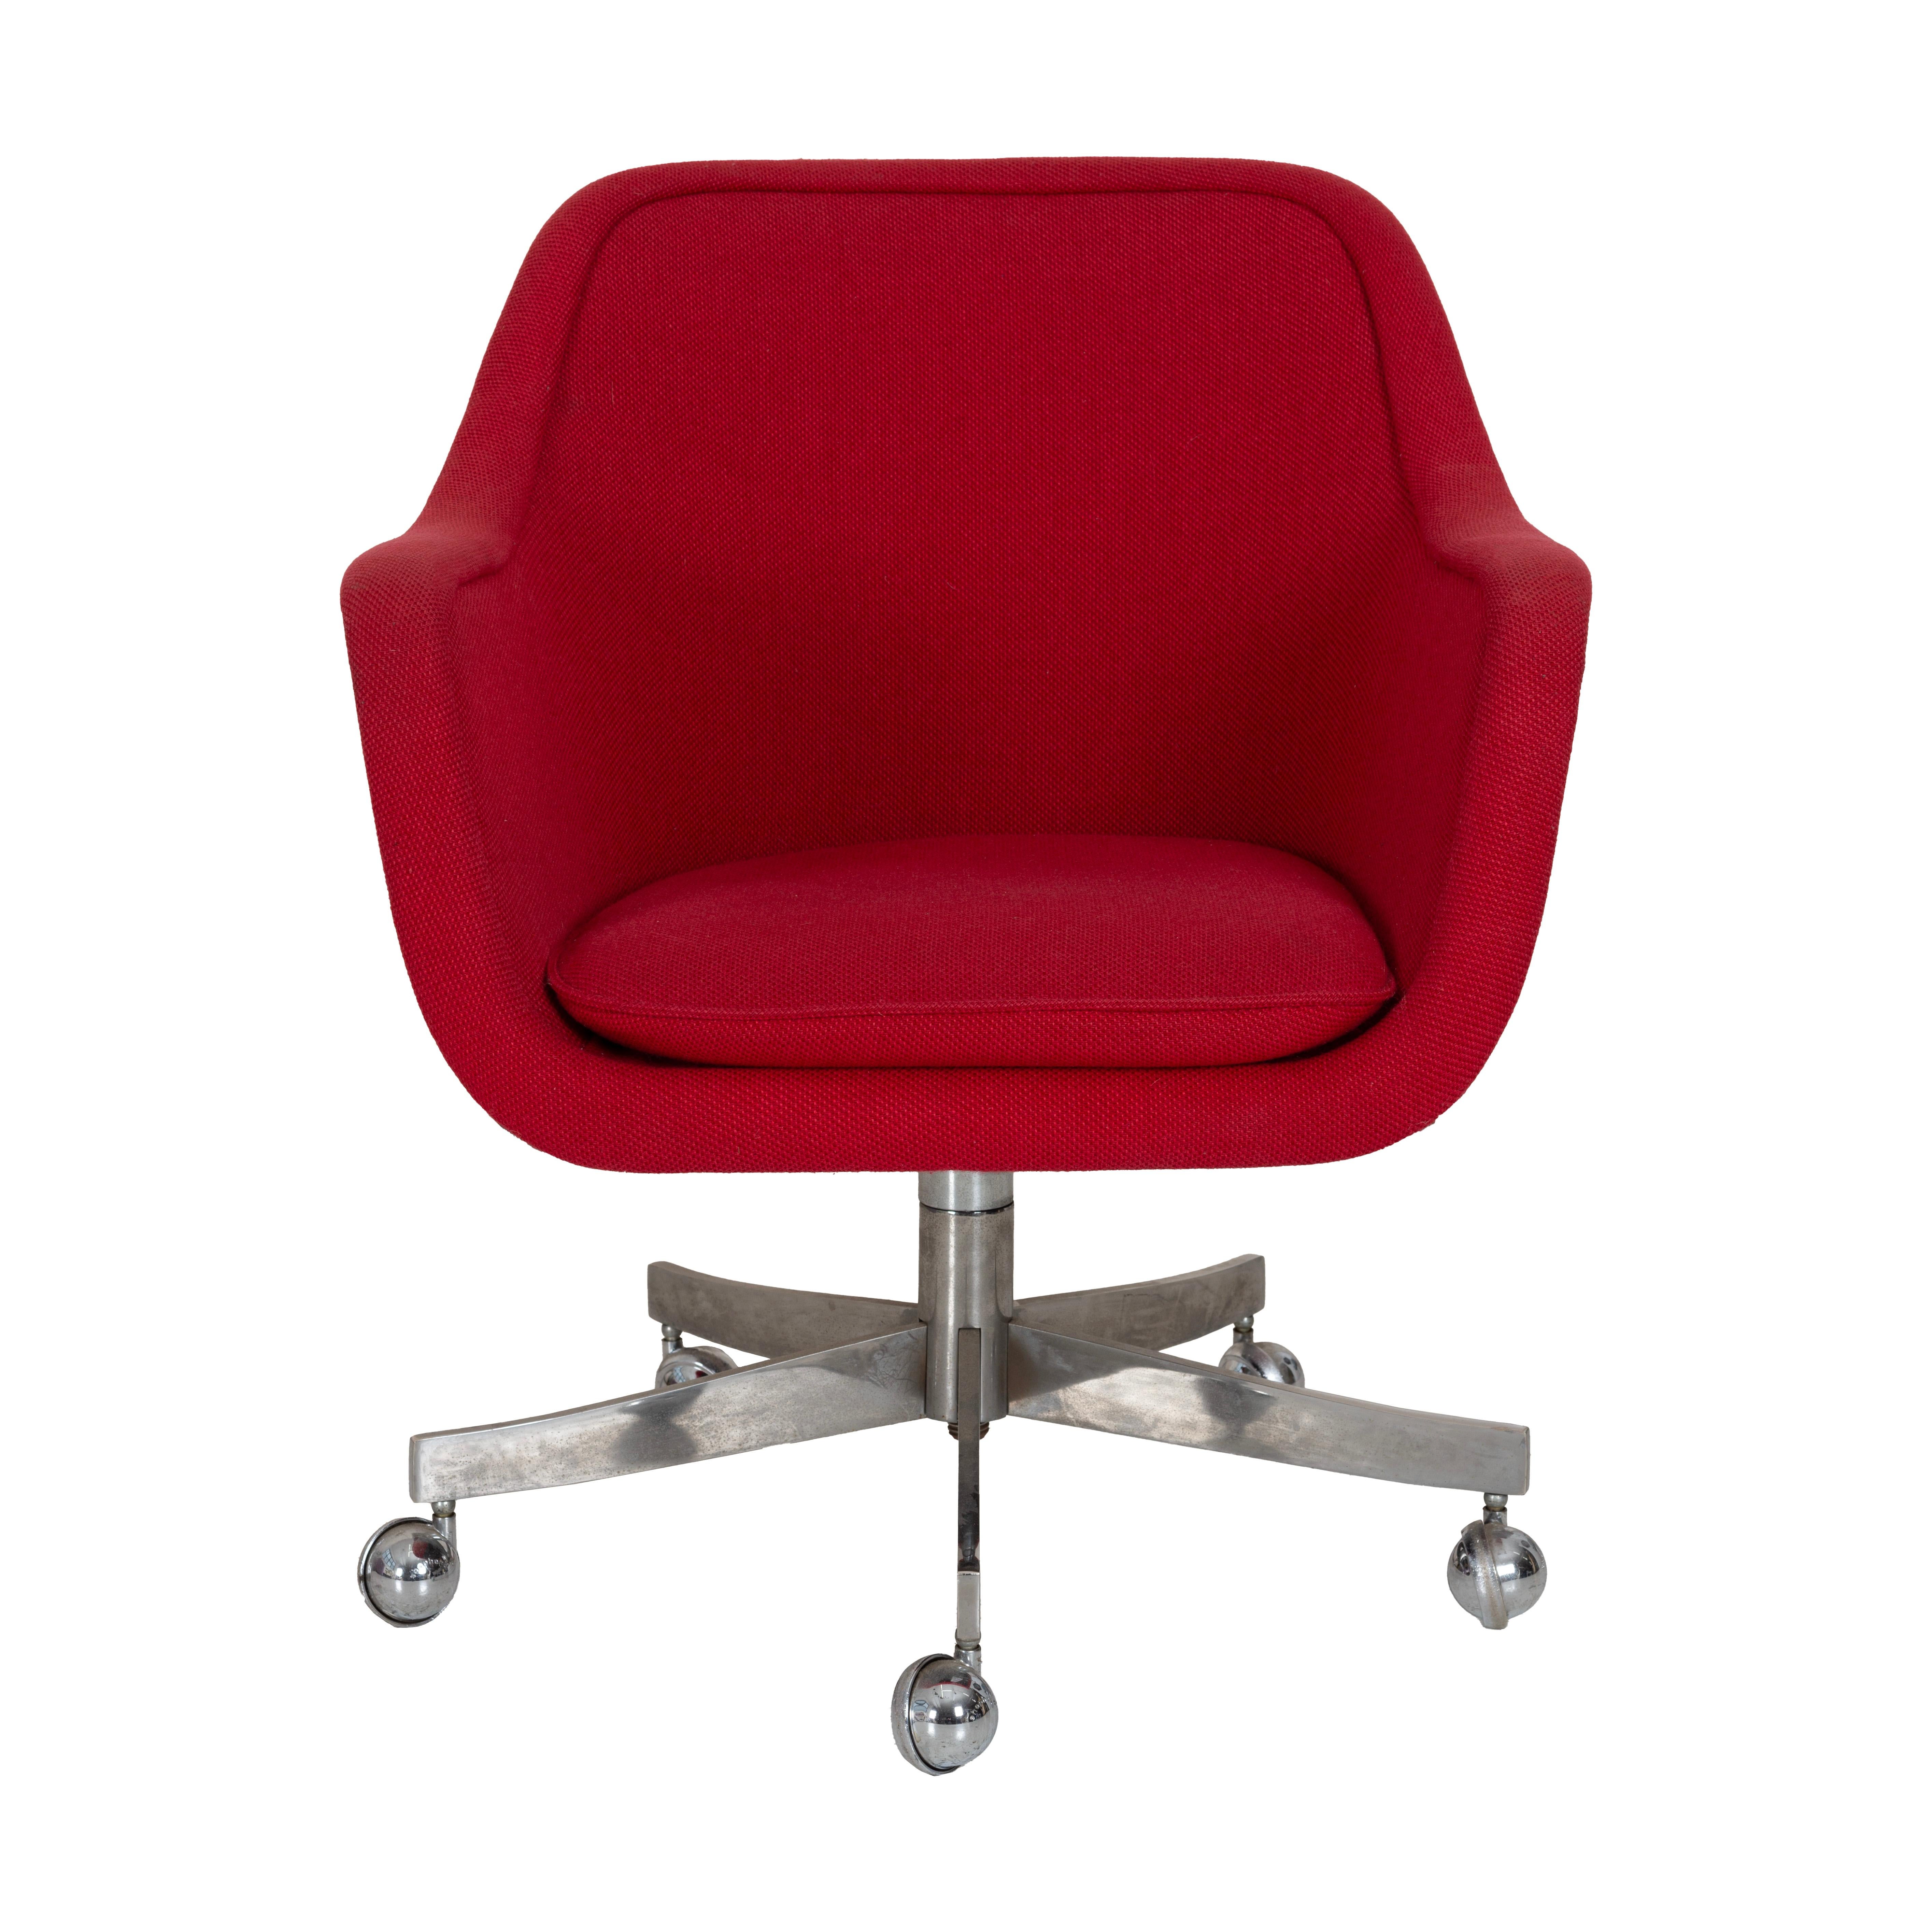 Chaise de bureau Ward Bennett.  Rembourré en tissu de coton rouge d'origine. La chaise est inclinable et pivotante et sa hauteur est réglable.  Les dimensions fournies sont les suivantes pour sa position la plus basse. il peut se relever jusqu'à 3